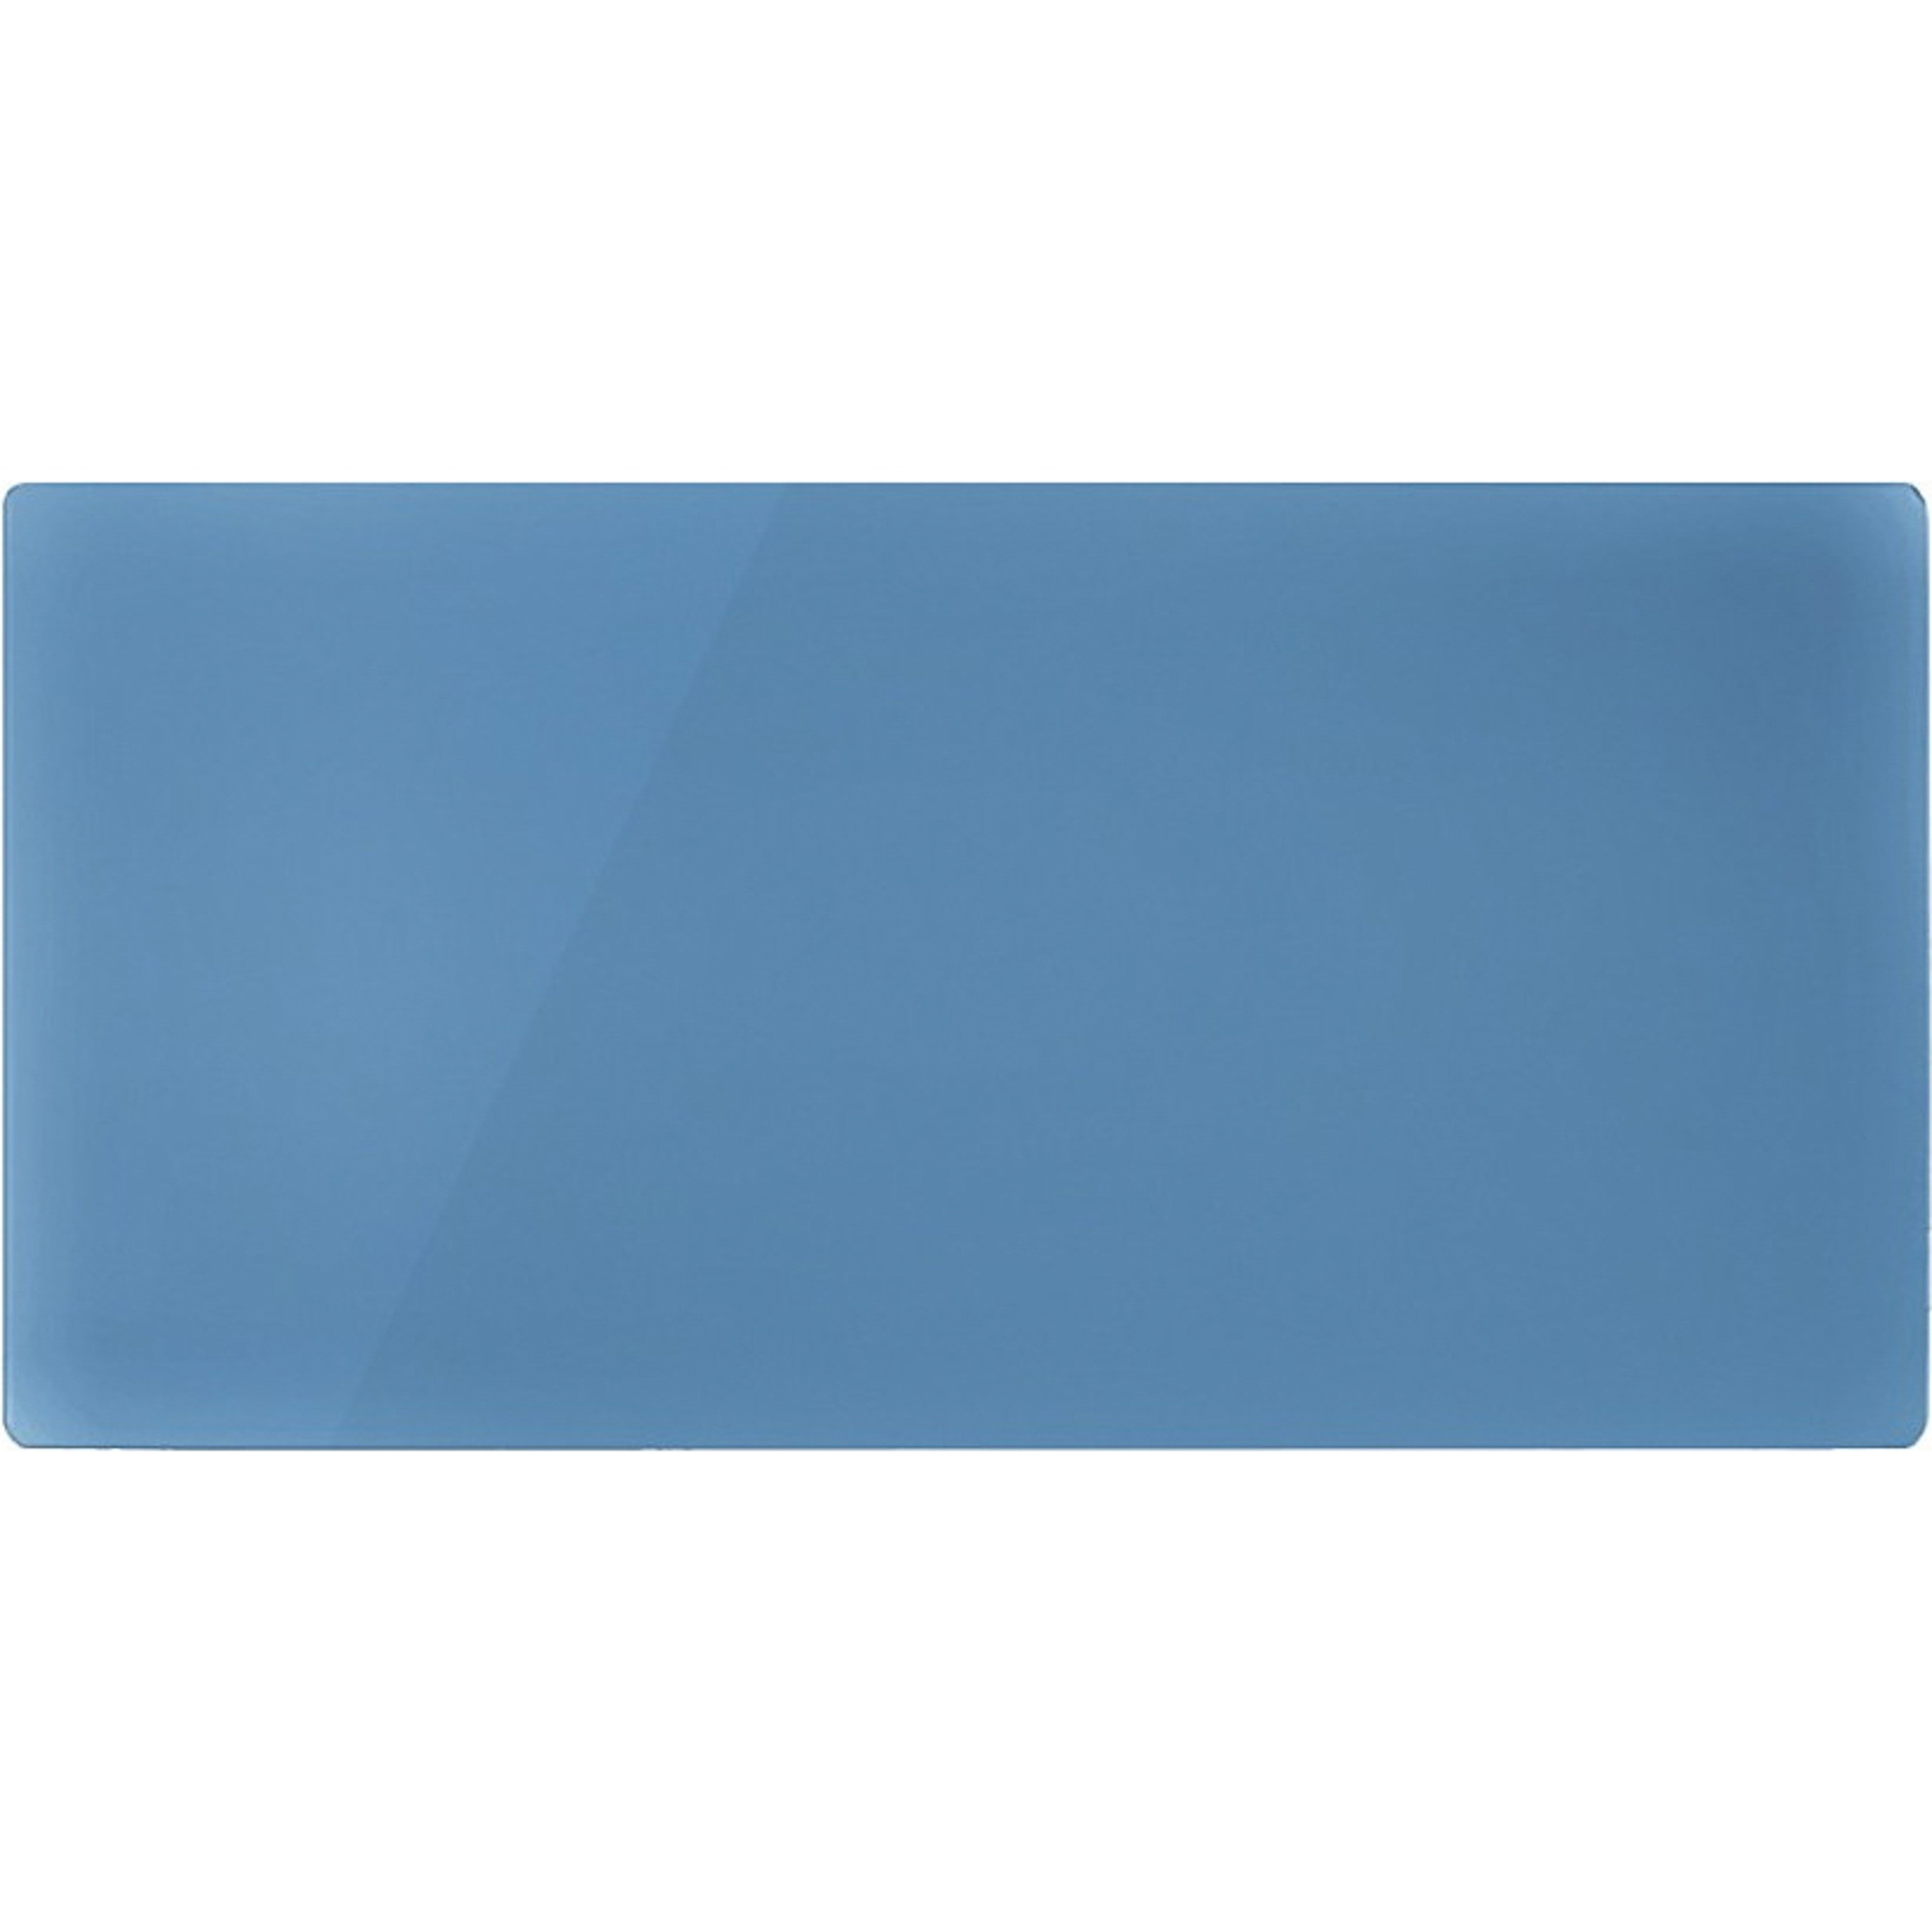 Декоративная панель Nobo NDG4 052 Retro Blue декоративная панель nobo ndg4 062 retro blue